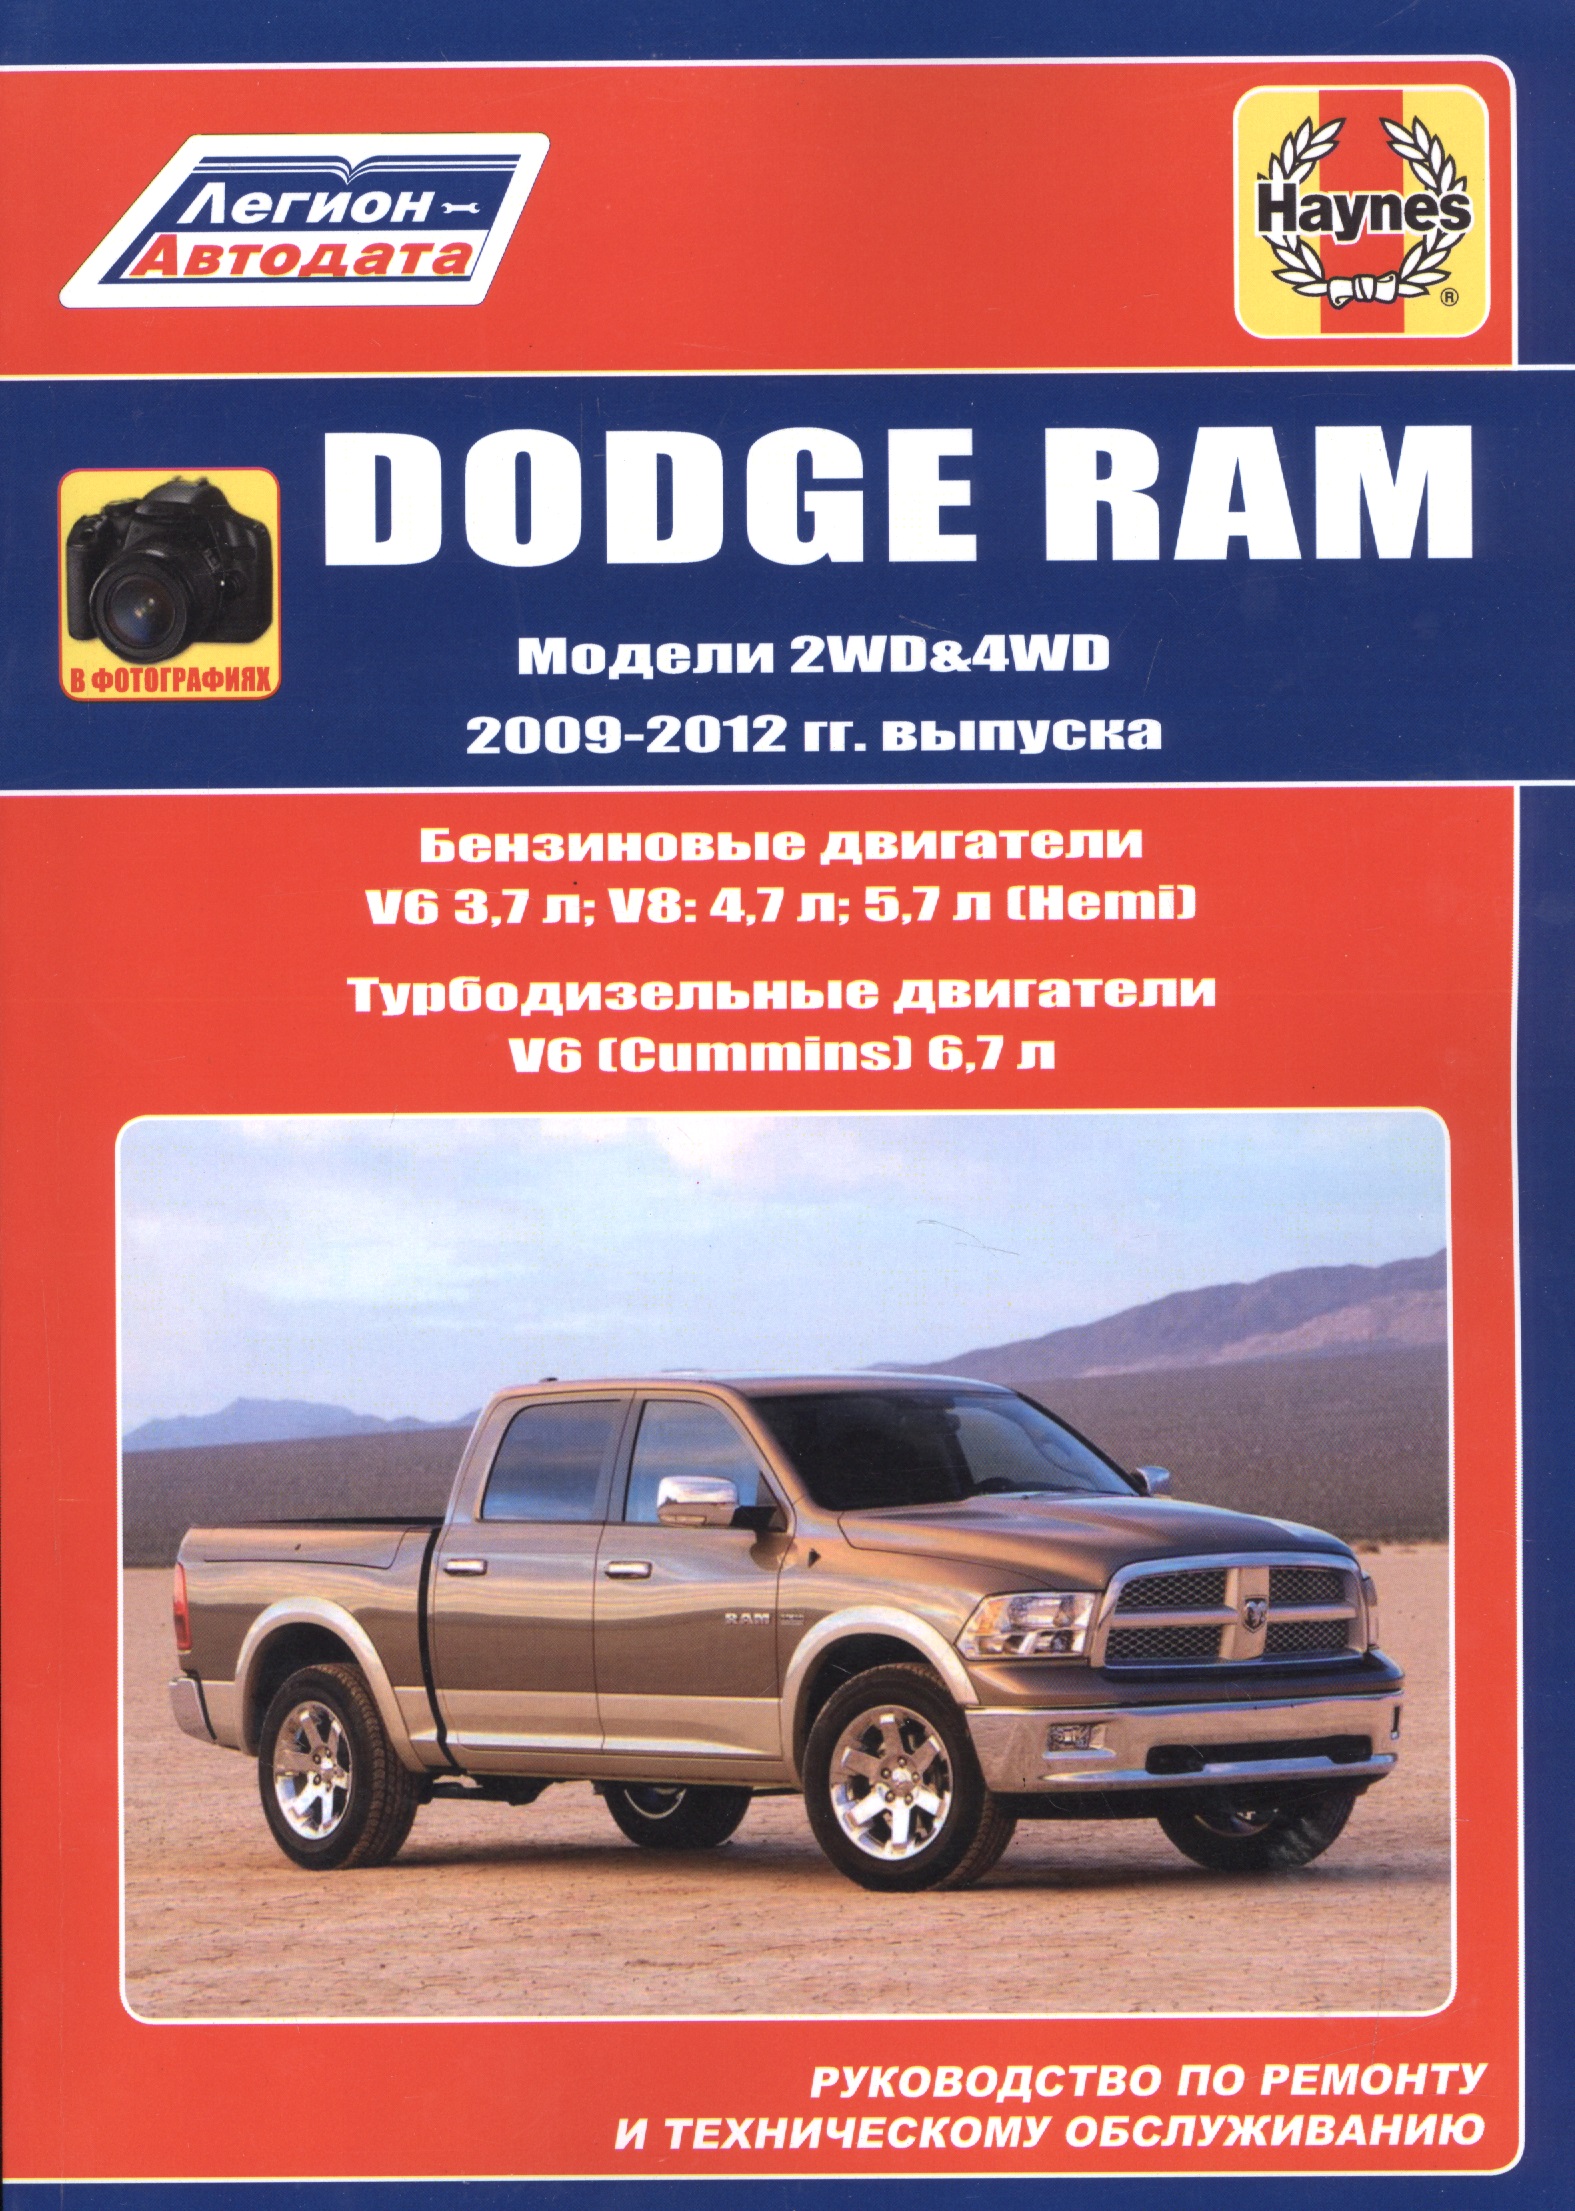 Dodge RAM. Модели 2WD&WD 2009 - 2012 гг. выпуска с бензиновыми V6 3,7л. V8: 4,7л .5,7л (Hemi) и турбодизельным V6 (Cummins) 6,7л двигателями. Руководство по ремонту и техническому обслуживанию a518 a500 42re 46re 47re 48re регулятор давления коробки передач фотографический комплект для dodge jeep 4617210 560281976ad